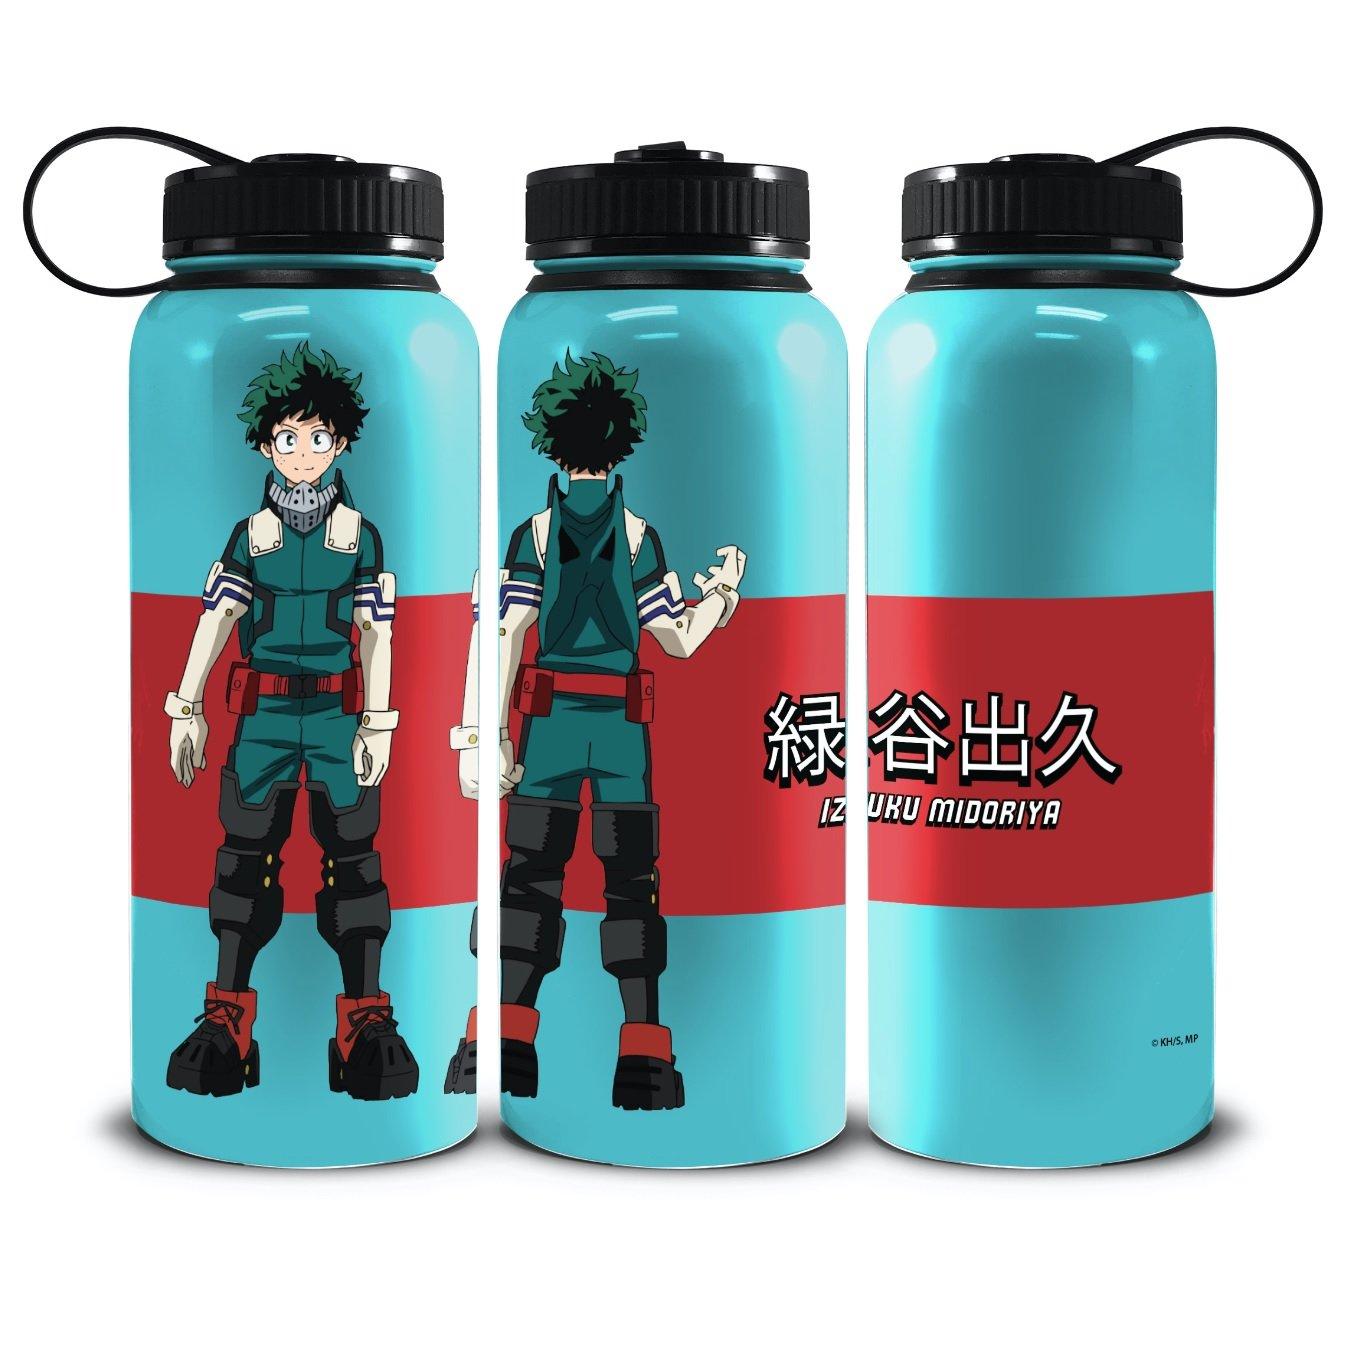 https://media.gamestop.com/i/gamestop/11180039_ALT01/My-Hero-Academia-Deku-Stainless-Steel-40-oz.-Water-Bottle?$pdp$